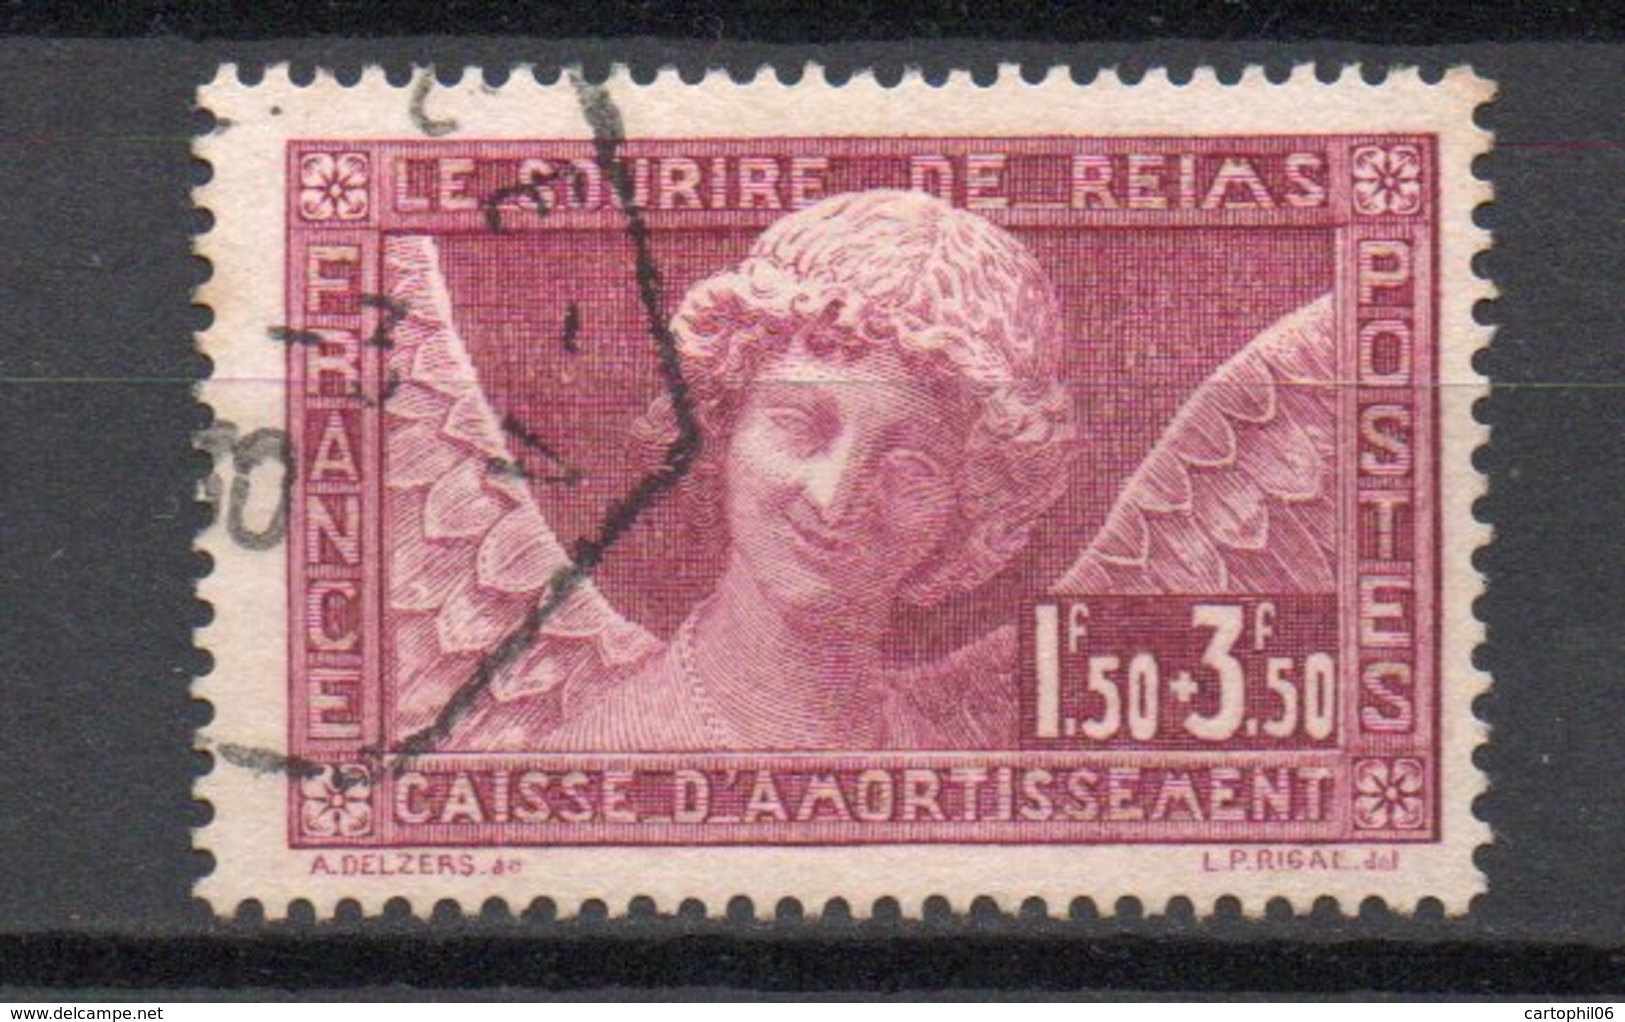 - FRANCE N° 256 Oblitéré - 1 F. 50 + 3 F. 50 Sourire De Reims Caisse D'Amortissement 1930 - Cote 100 EUR - - Used Stamps